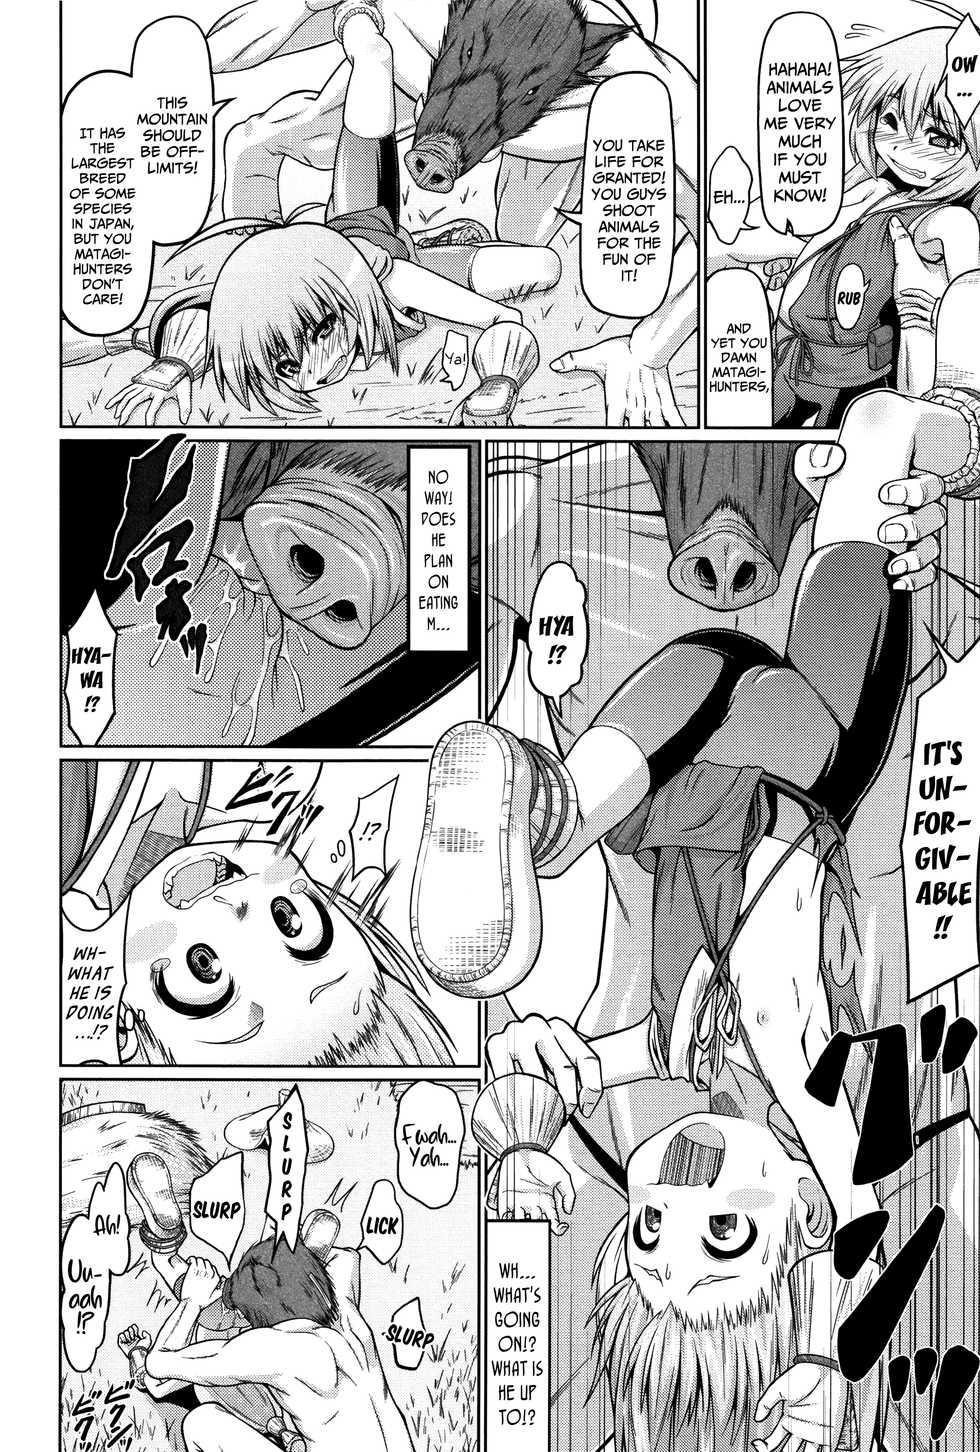 [Zenra Yashiki] Matagi ga Emono ni Kaeriuchi de | When A Matagi-Hunter Becomes the Hunted (Okosama Basket) [English] {Mistvern + Bigk40k} - Page 4